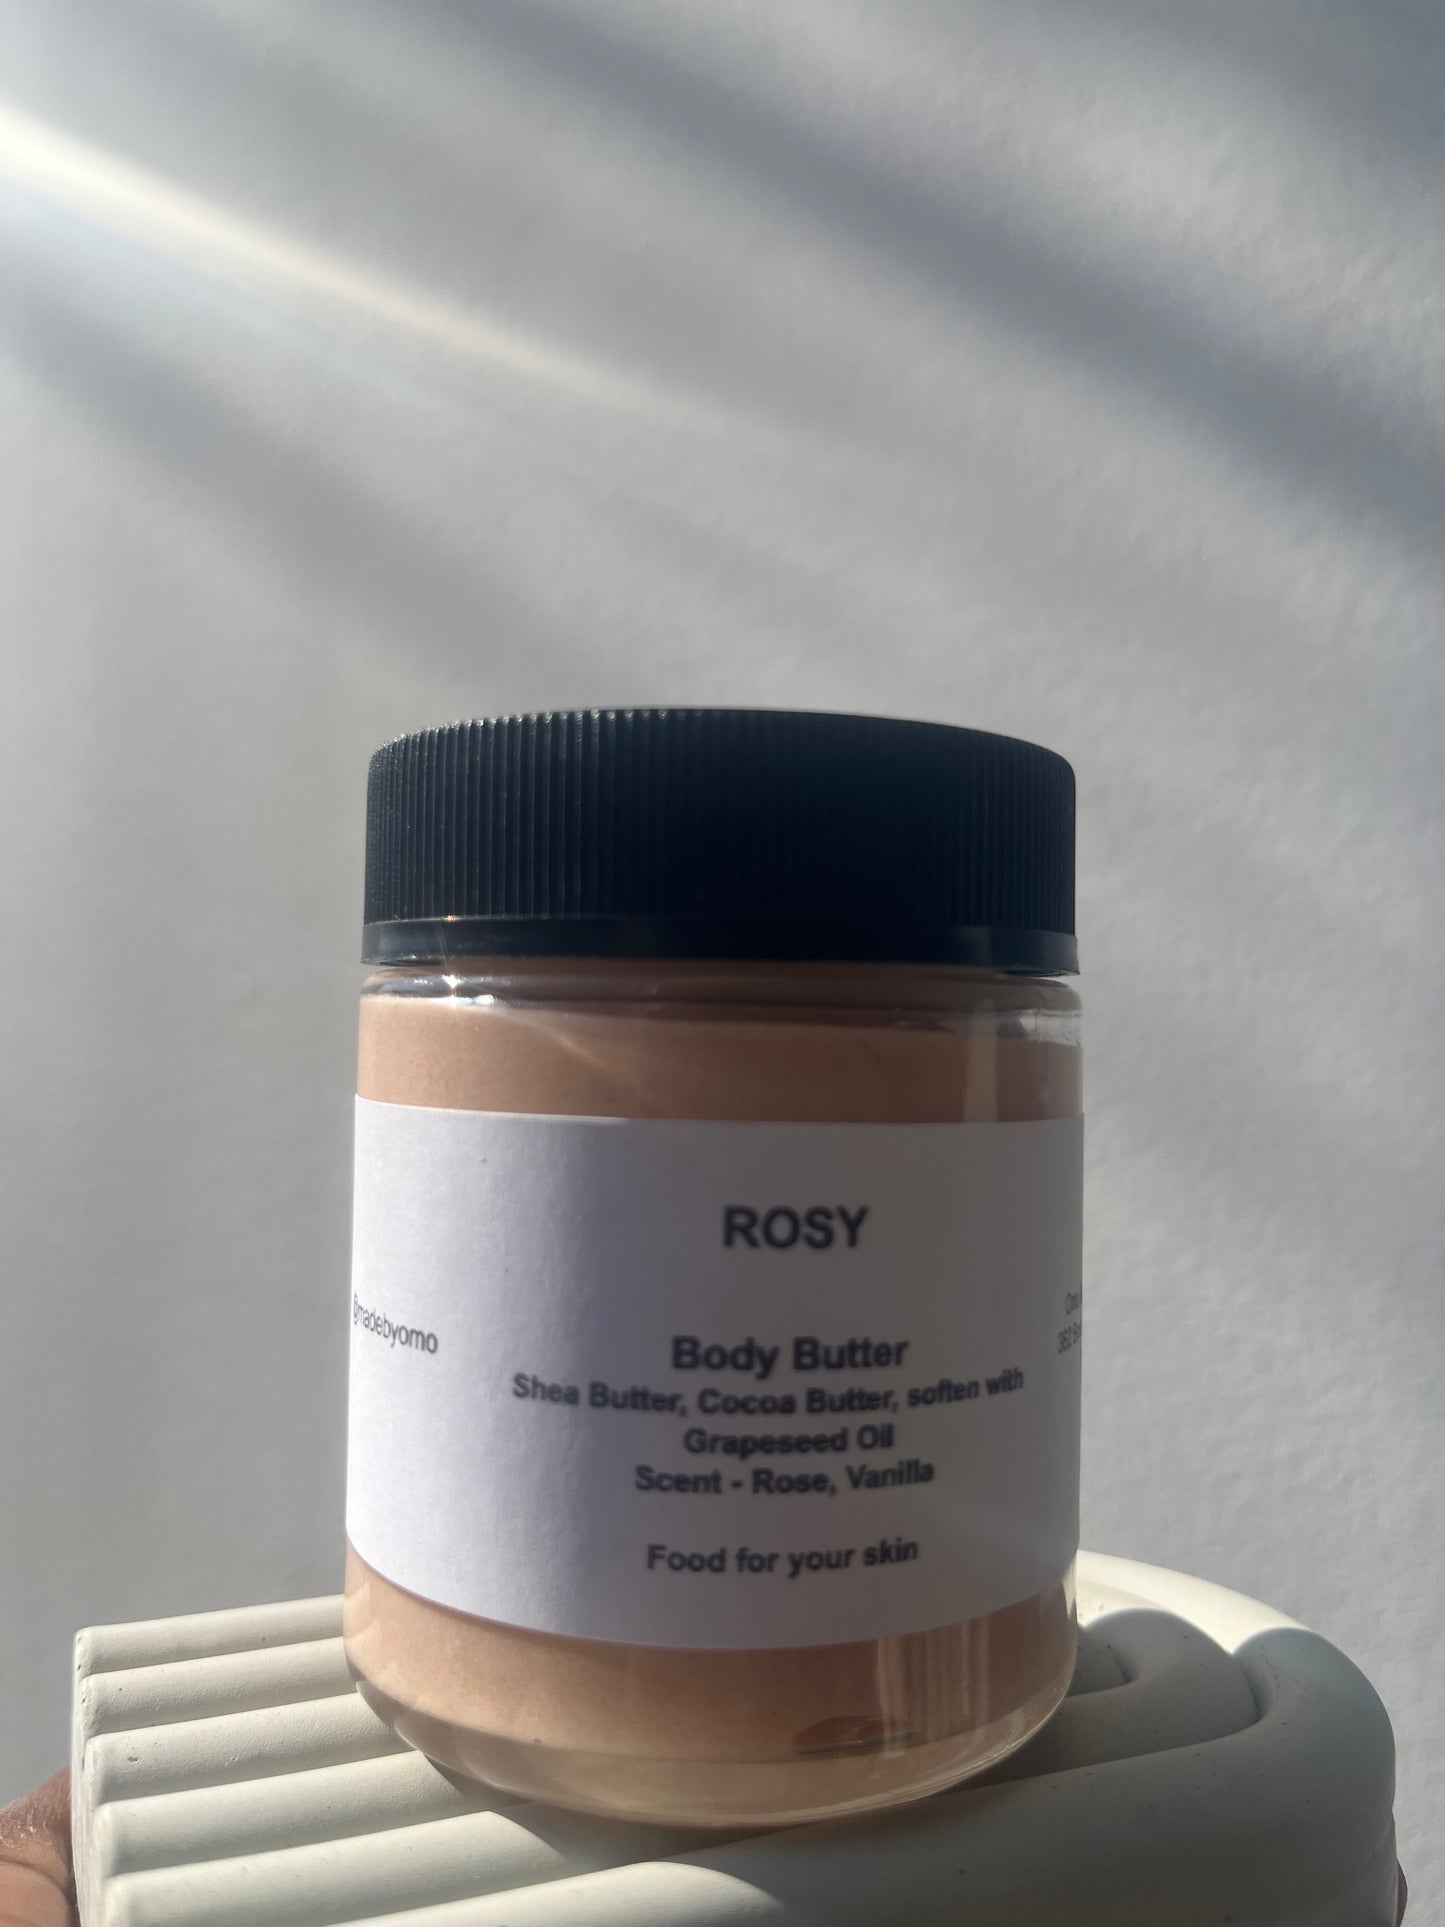 Body Butter l Small Batch Body Butters | Handmade Body Butter l Jar 110g 3.8oz